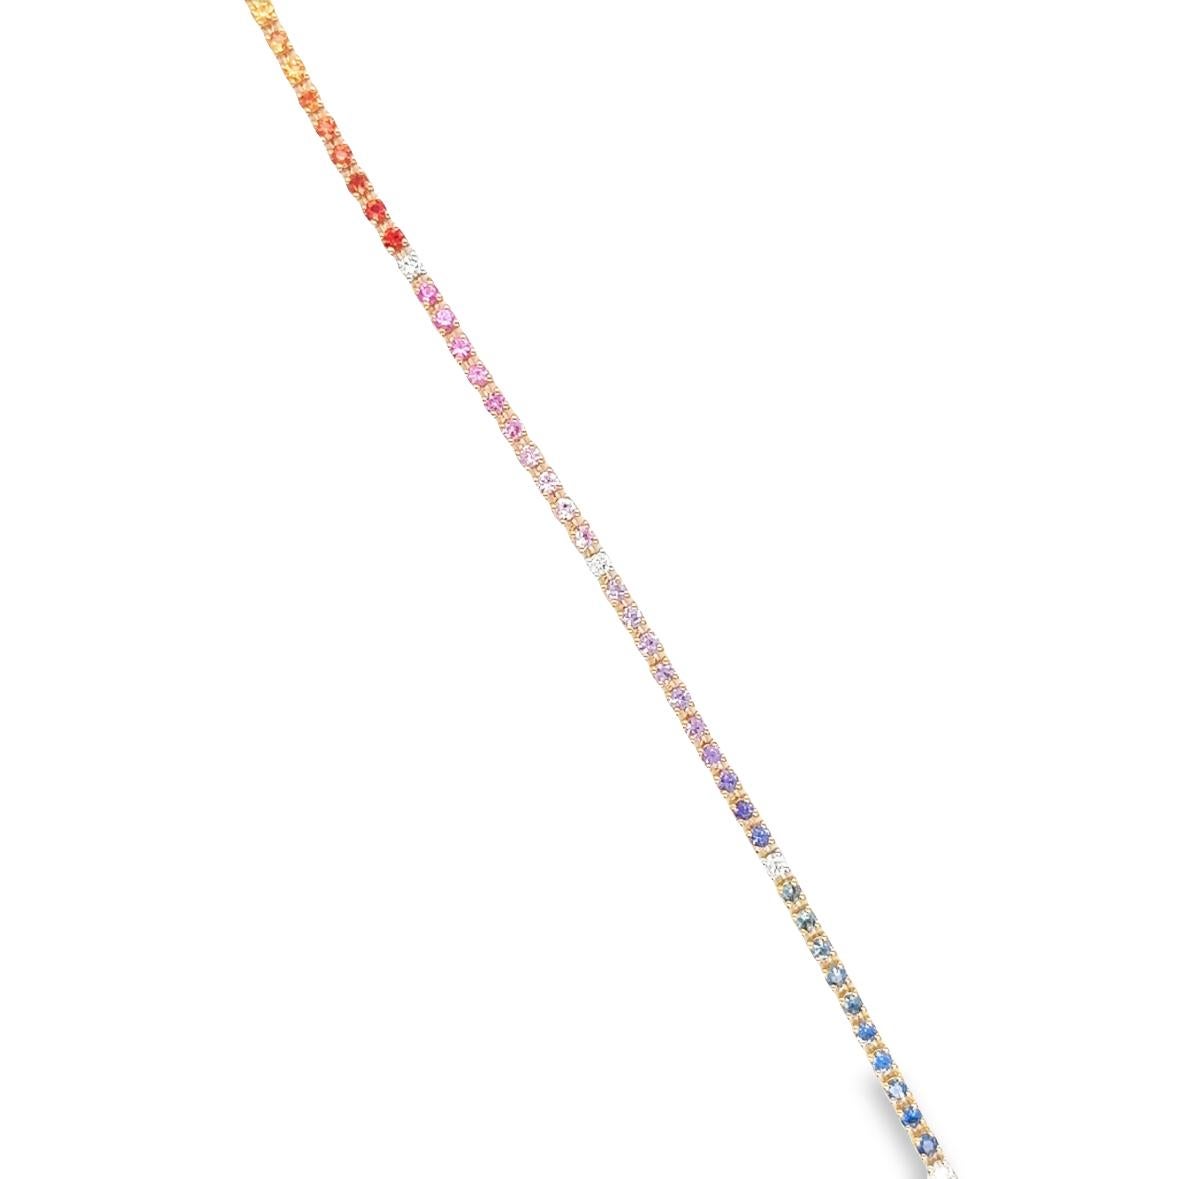 Le bracelet de tennis RIAD est élégamment conçu en or rose 18 carats, avec un poids de 7,74 grammes. Il présente une étonnante combinaison de saphirs colorés, totalisant 2,13 carats, et est orné de diamants de couleur G et de pureté VS, totalisant